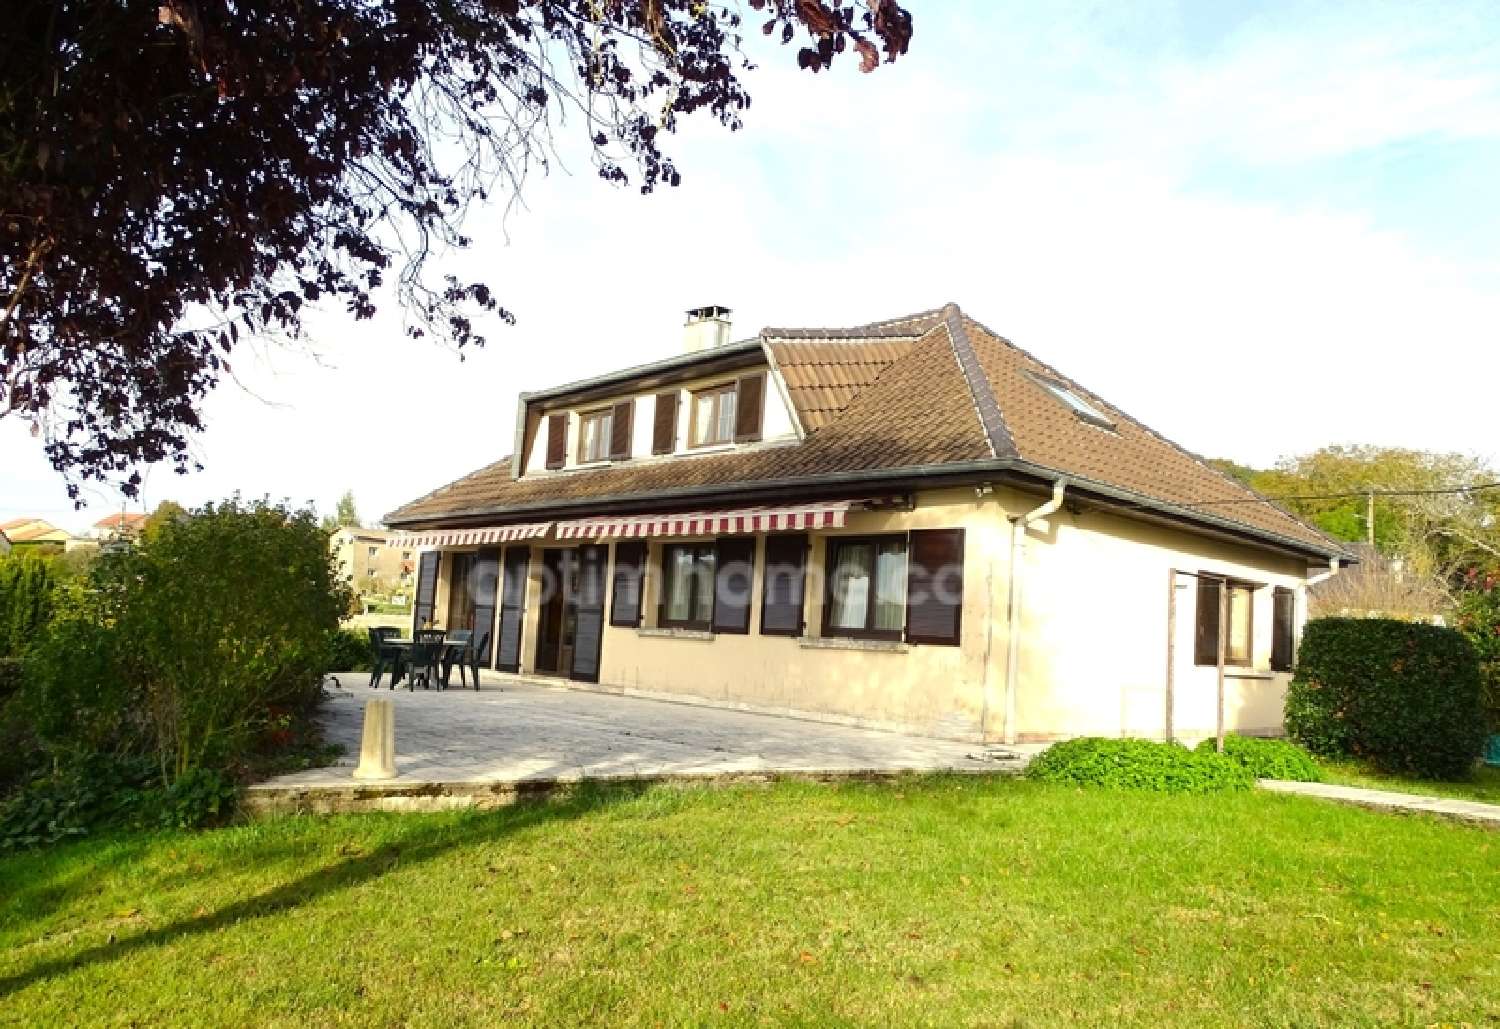  à vendre maison de village Allamps Meurthe-et-Moselle 1